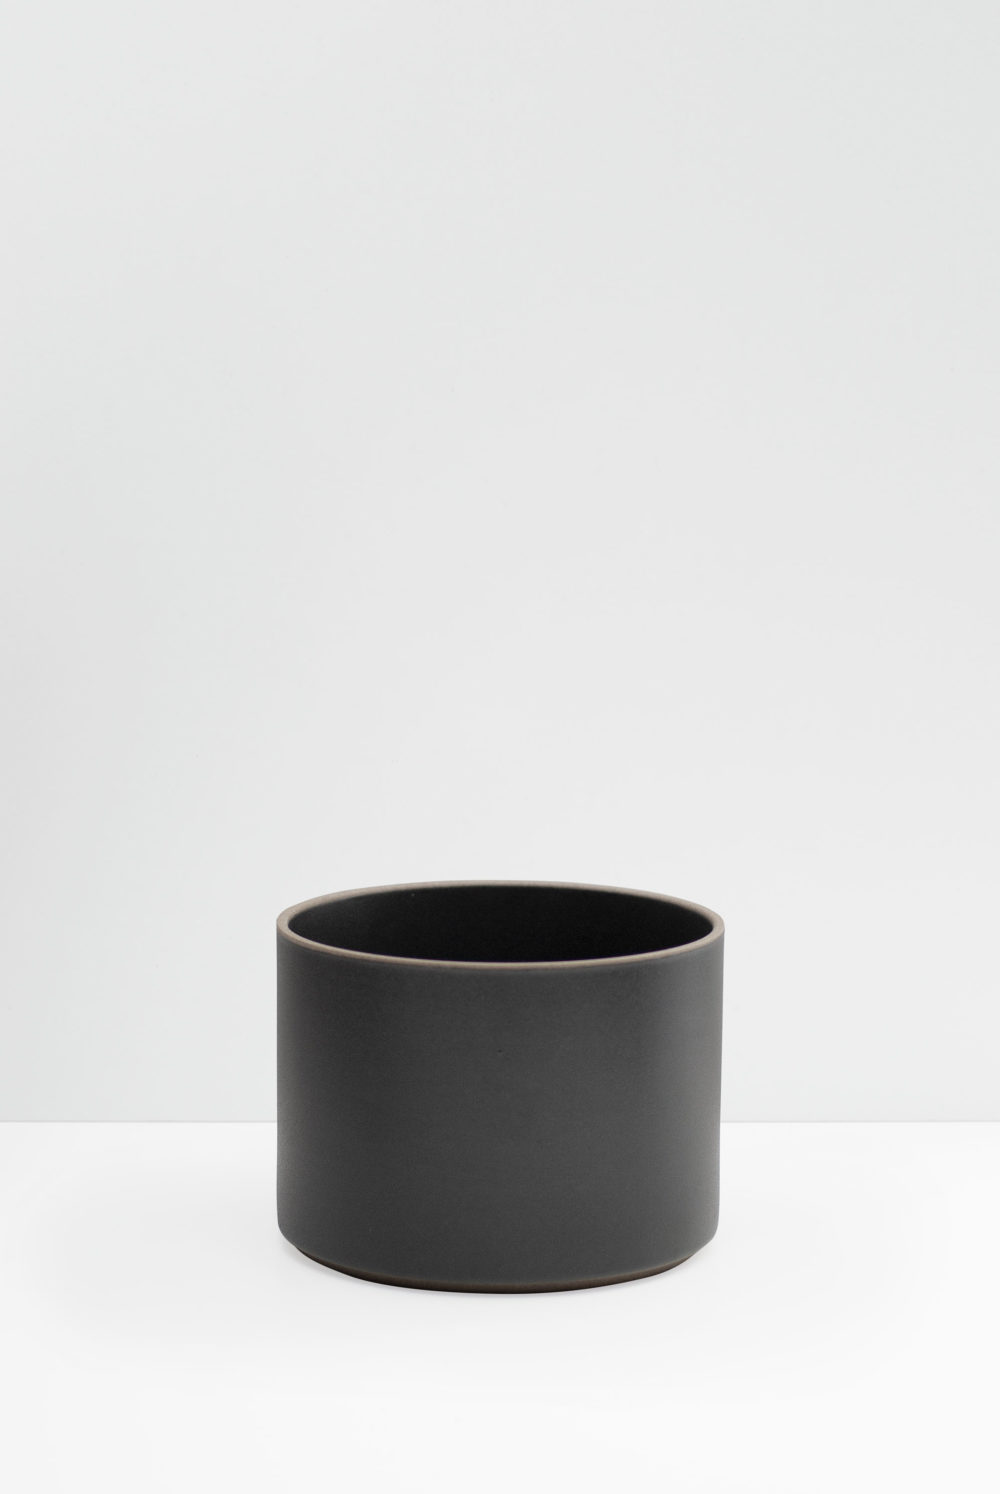 Hasami Porcelain planter in Matte Black